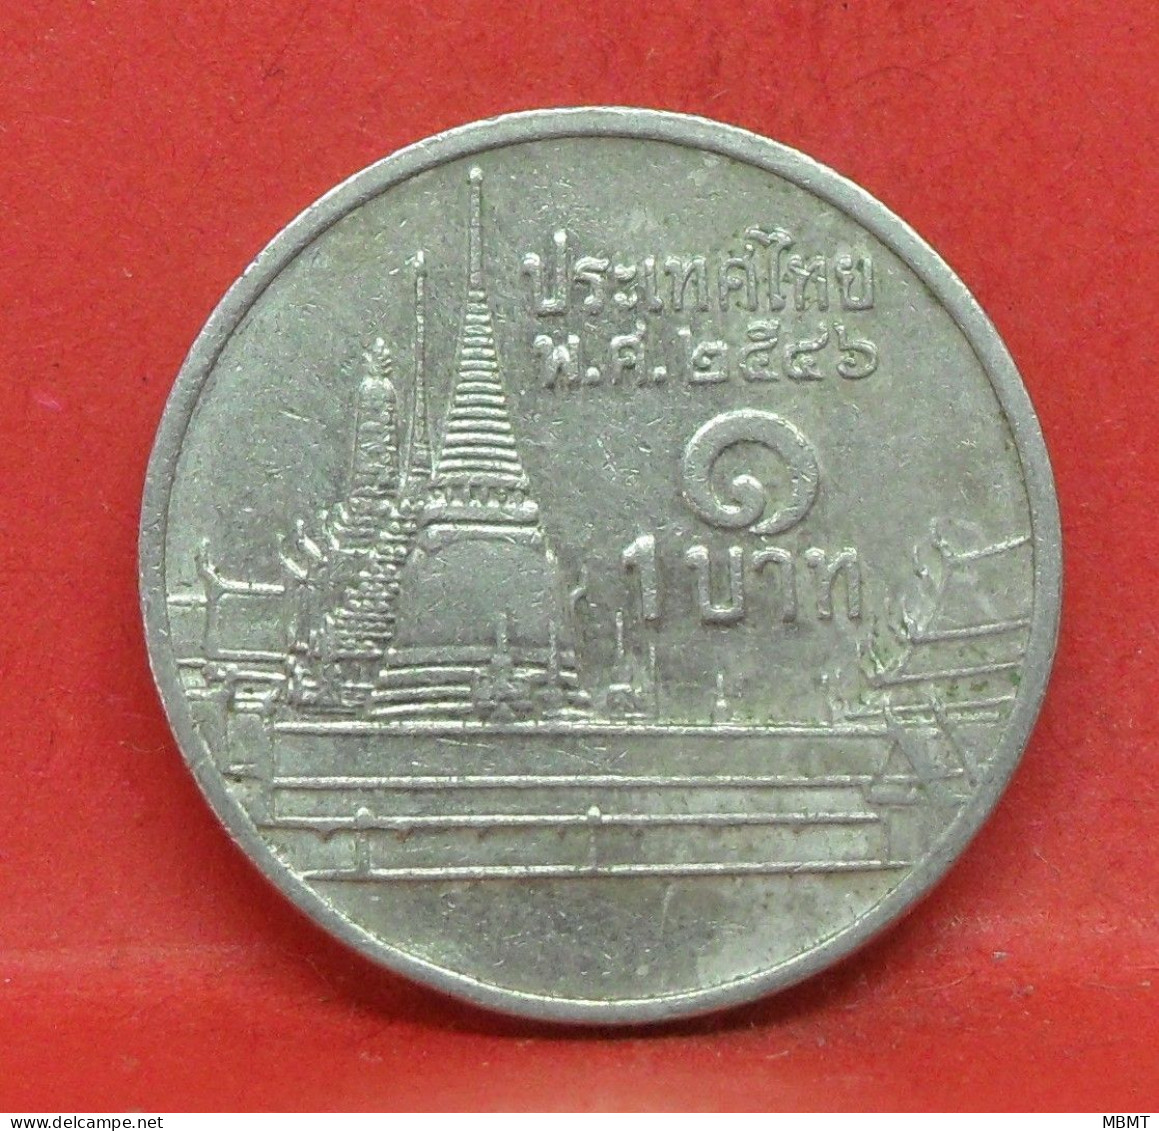 1 Bath 1999 - TB - Pièce De Monnaie Thaïlande - Article N°6494 - Thailand